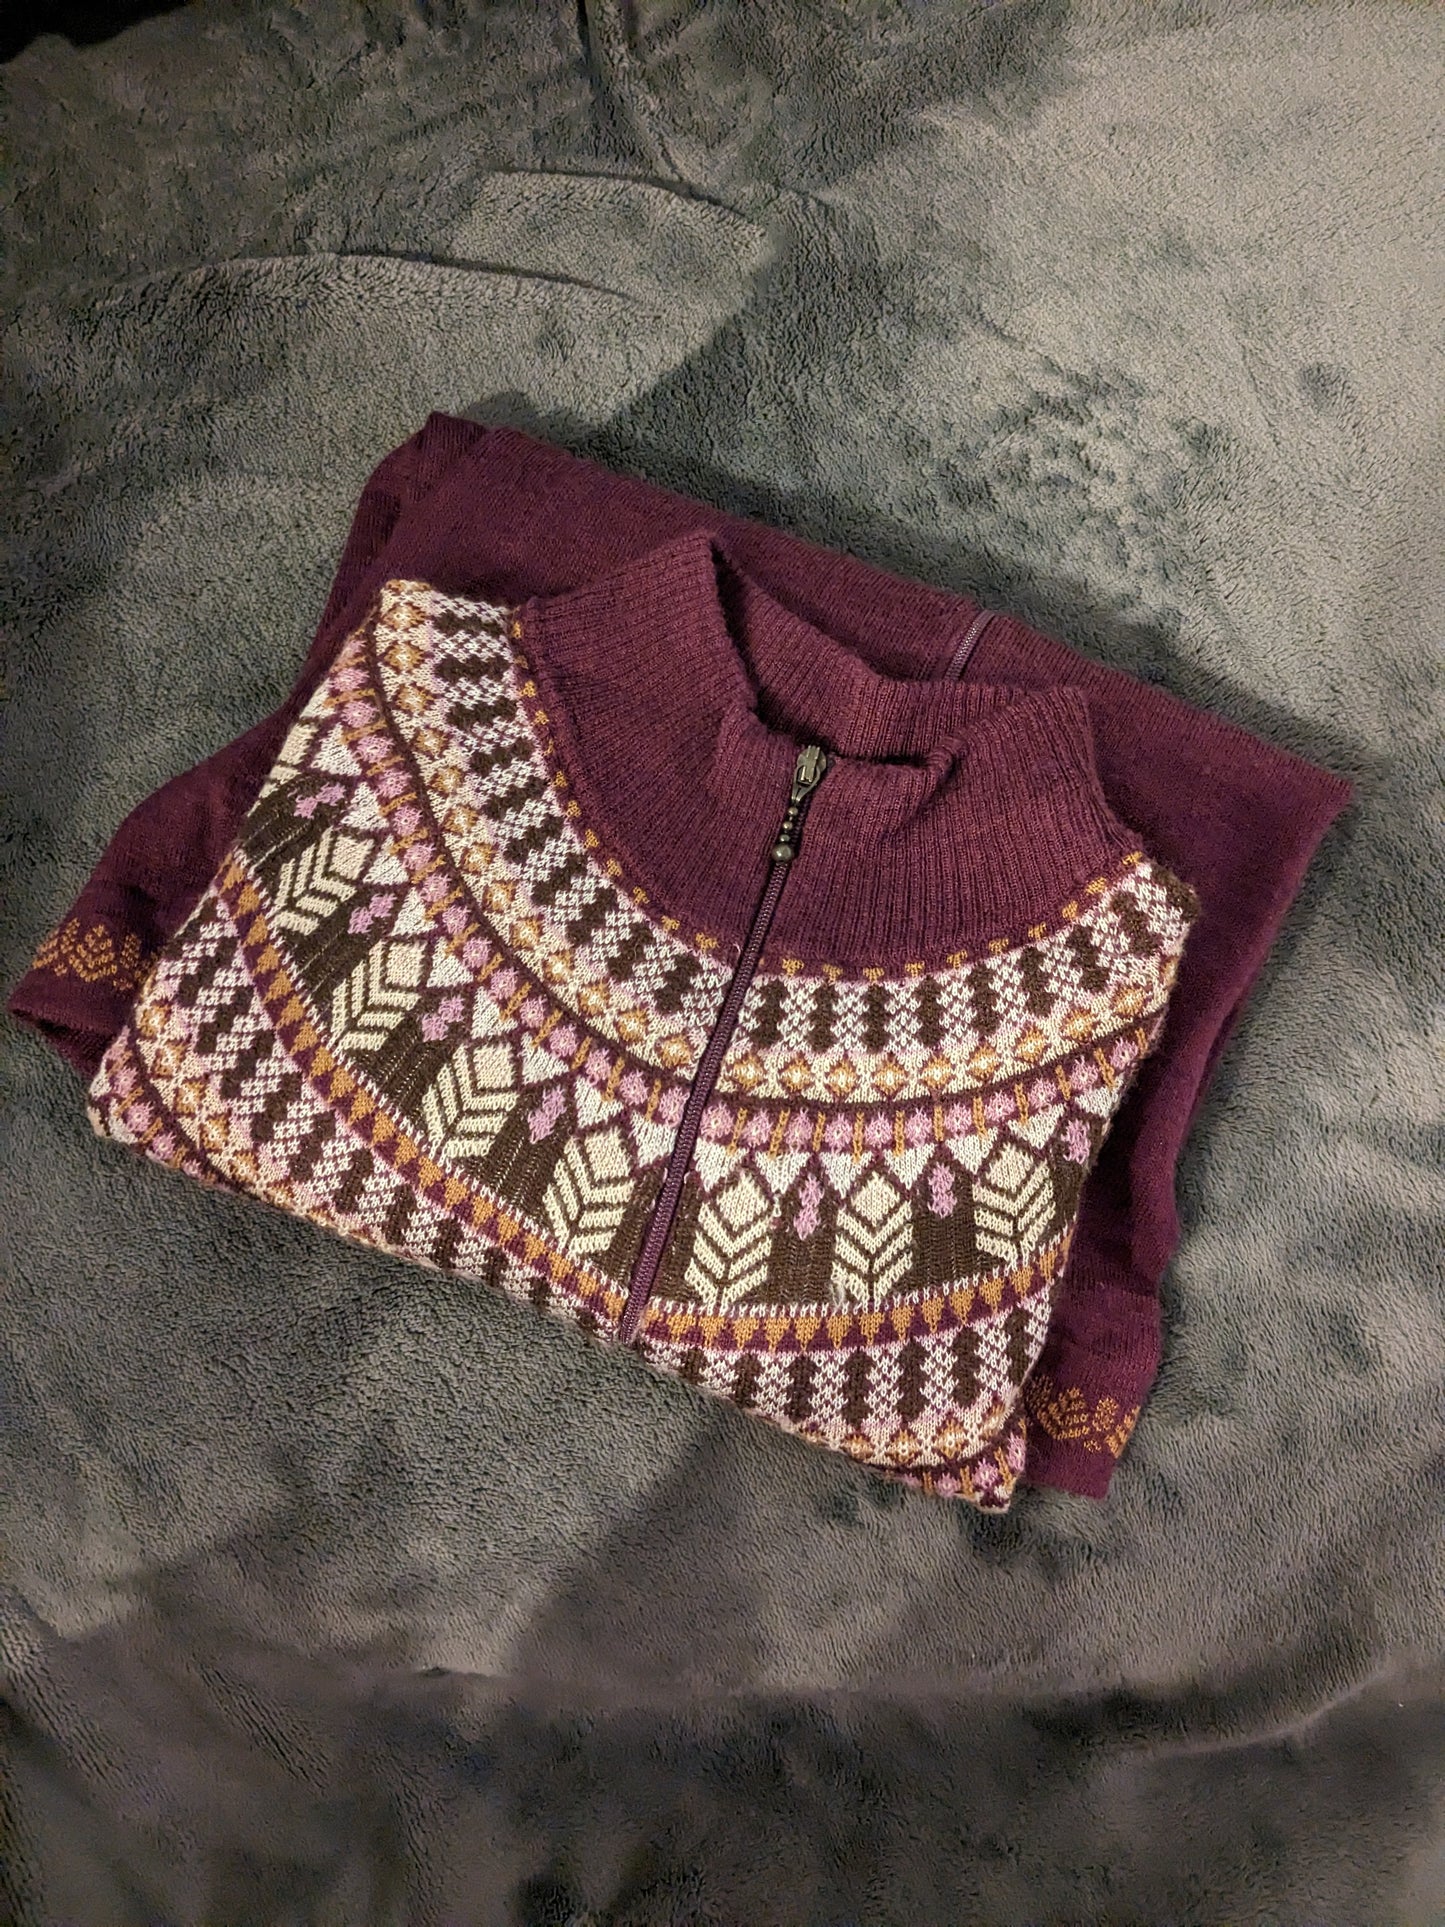 Woolrich Purple Wheat Zip Sweater